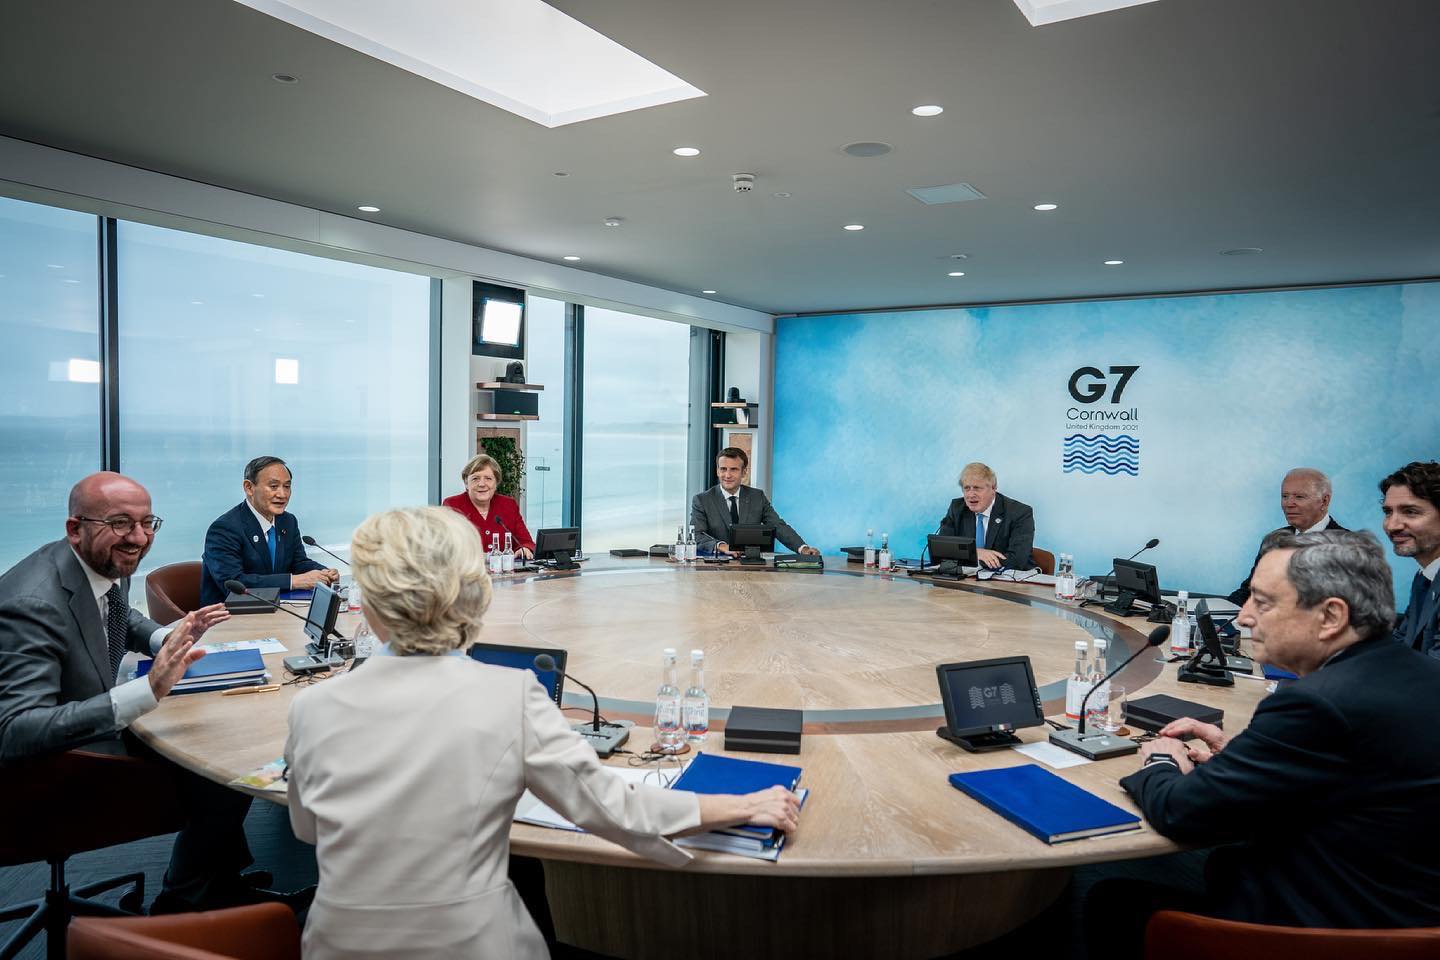 歐美關係生變？《彭博》：G7對中國立場分歧｢歐洲更重視經濟利益｣